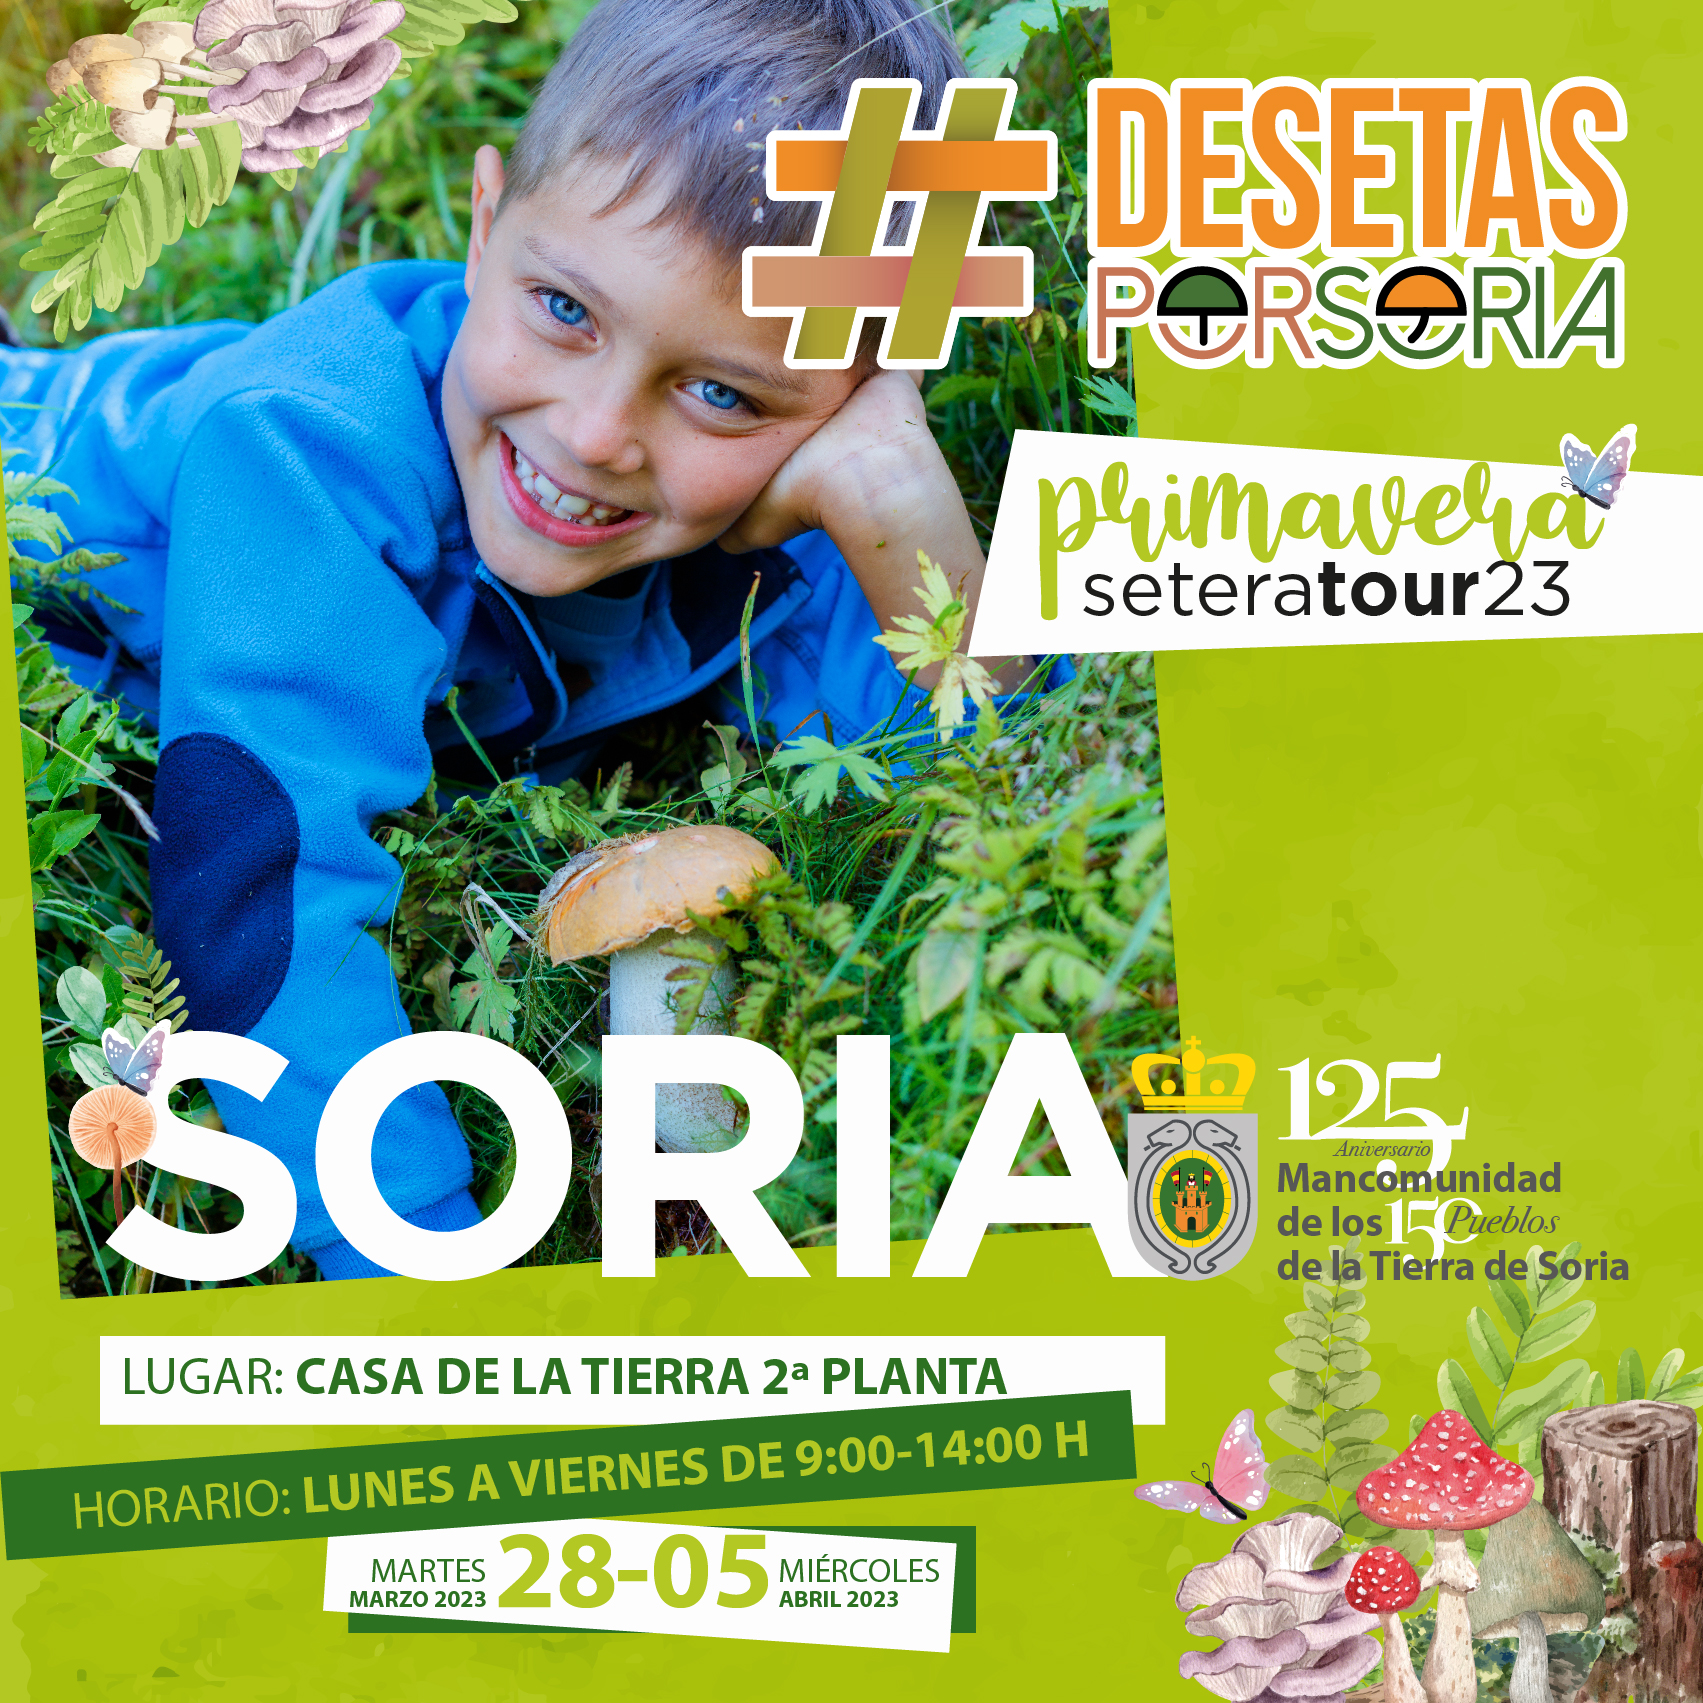 De setas por Soria – Soria 2023